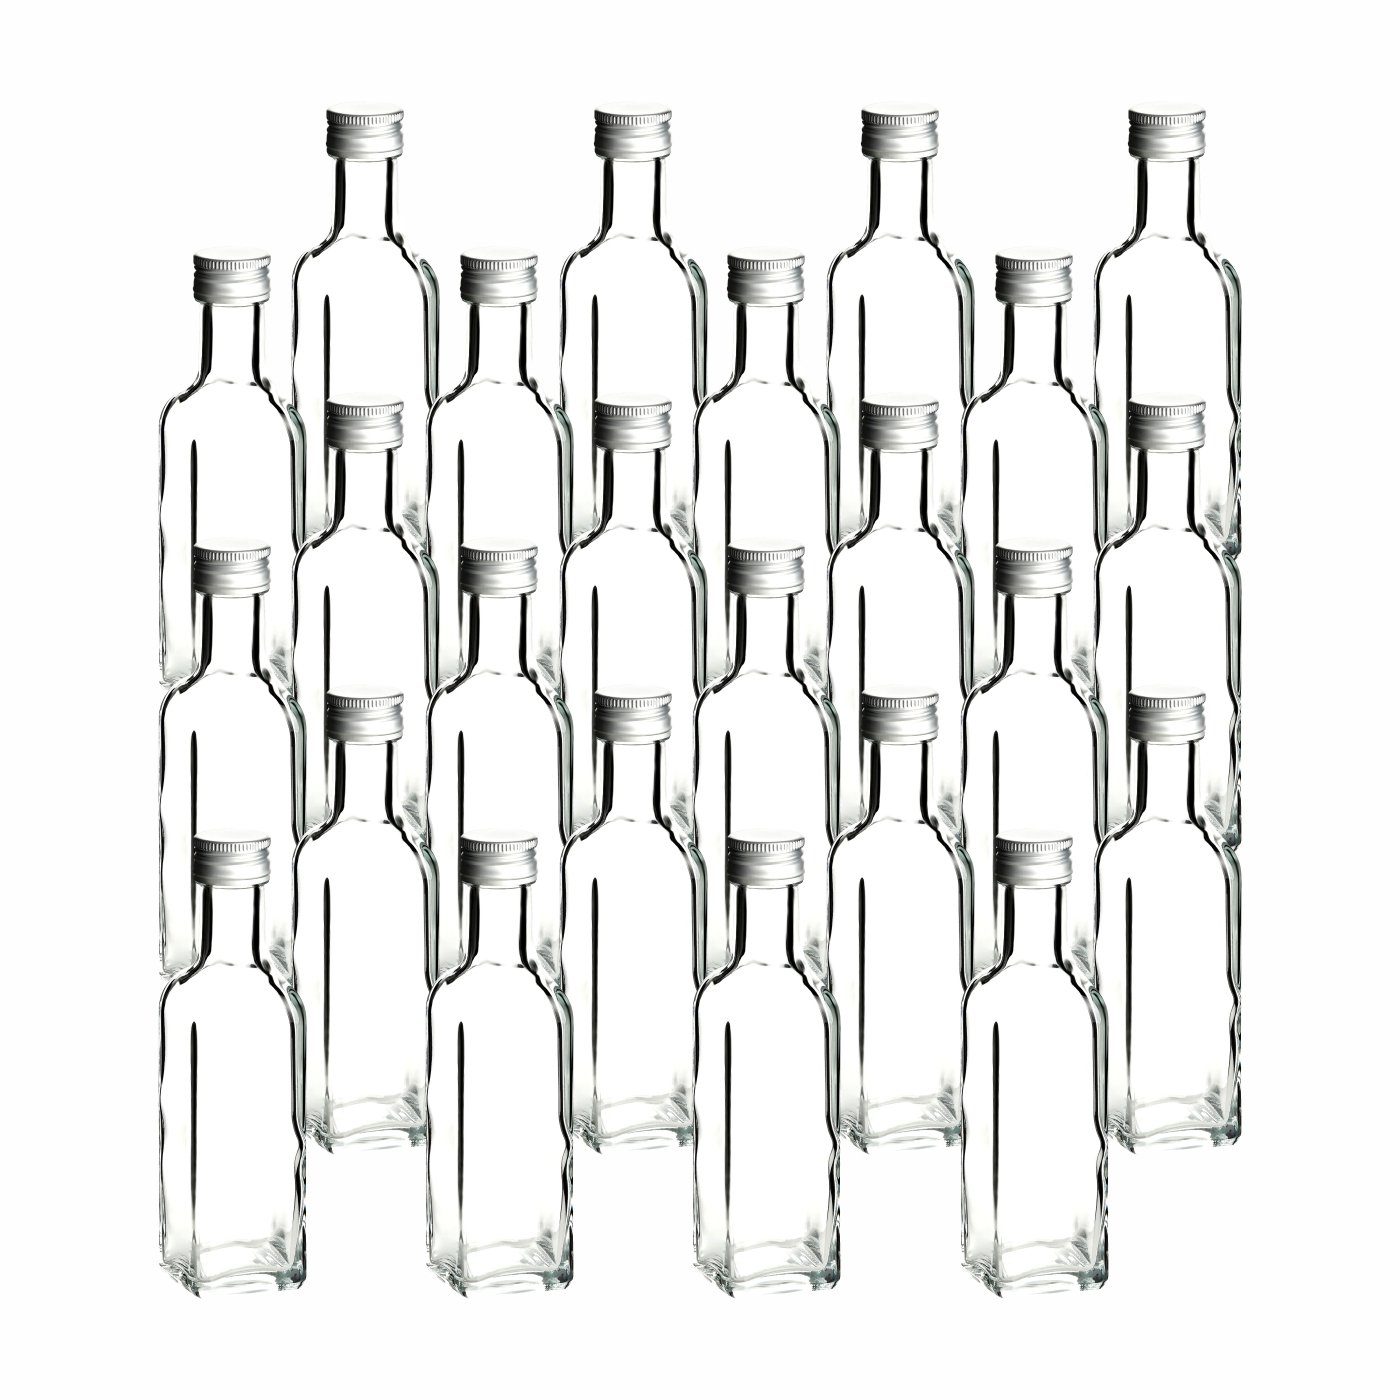 gouveo Trinkflasche Glasflaschen 100 ml Maraska mit Schraub-Deckel - Kleine Flasche 0,1l, 24er Set, transparent-silberfarben transparent - silberfarben | Trinkflaschen